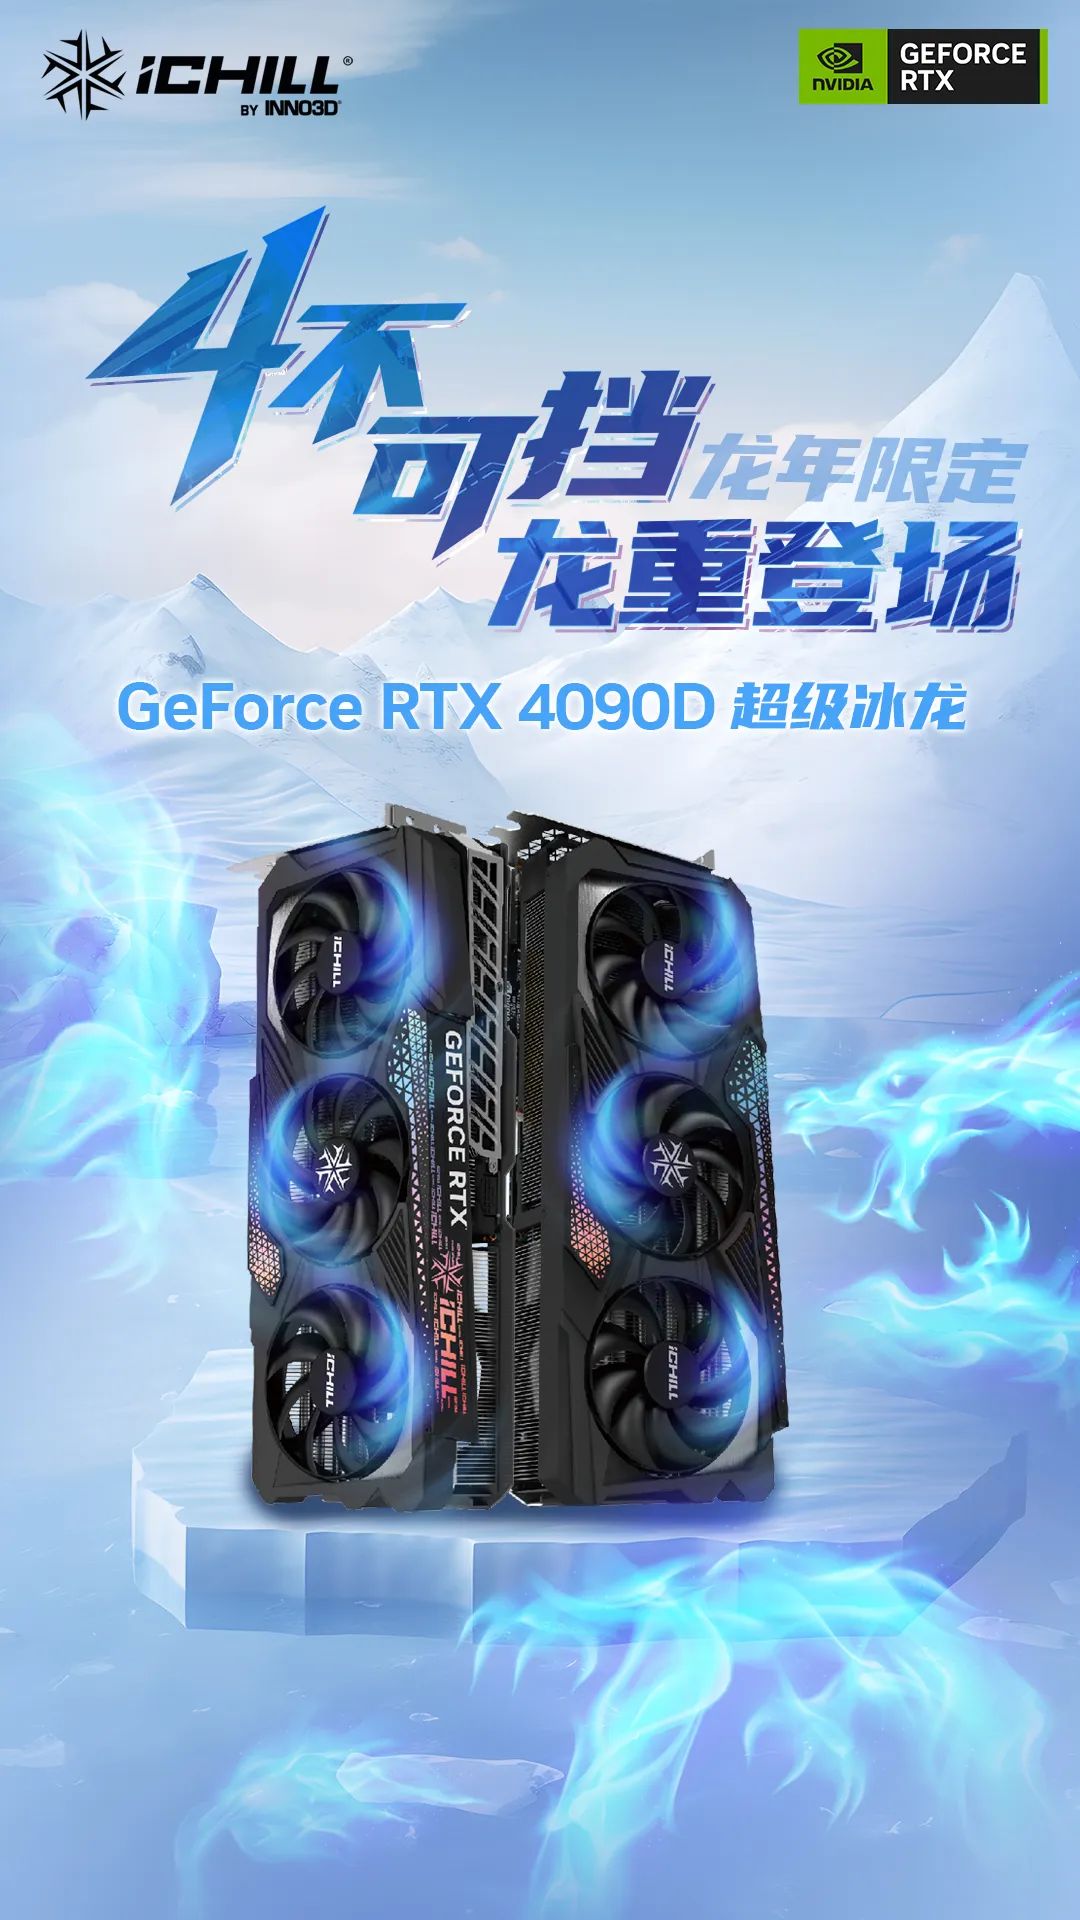 映众推出 RTX 4090 D 超级冰龙 / X3 显卡